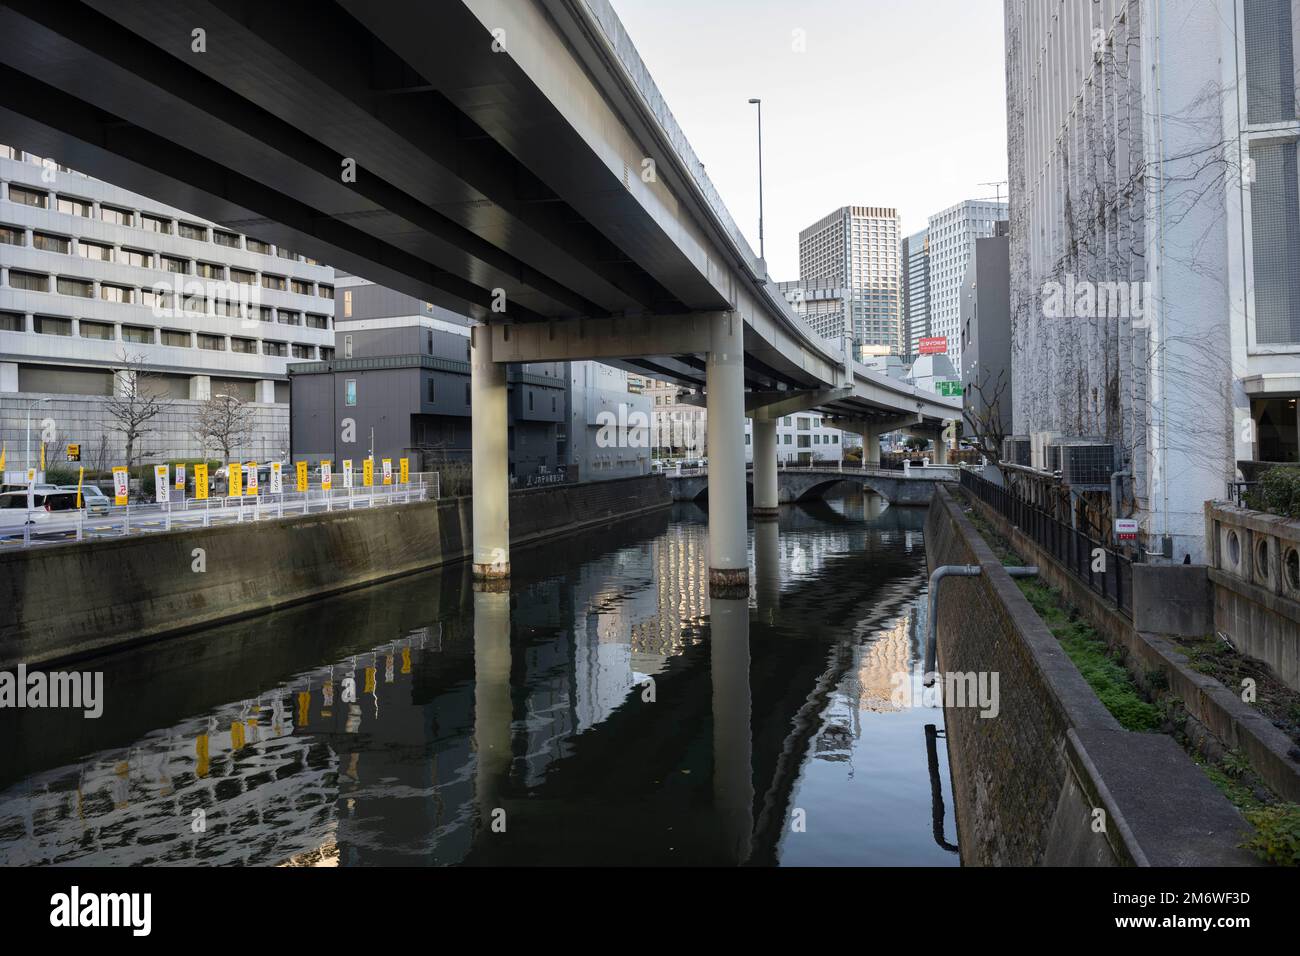 Tokio, Japan. 3. Januar 2023. Eine Autobahnüberführung über dem Kanda River in Tokio. Die Stadt ist berühmt für ihre Autobahnen, die über Flüsse gebaut wurden, und hat begonnen, städtische Autobahnen abzubauen, um Grünwege entlang der zahlreichen Flüsse und Kanäle der Stadt zu schaffen. Marunouchi ist ein wichtiges zentrales Geschäftsviertel in der Nähe des Kaiserpalastes und des Bahnhofs von Tokio. Es ist eines der wichtigsten Zentren der japanischen Wirtschaft und Wirtschaft. (Kreditbild: © Taidgh Barron/ZUMA Press Wire) Stockfoto